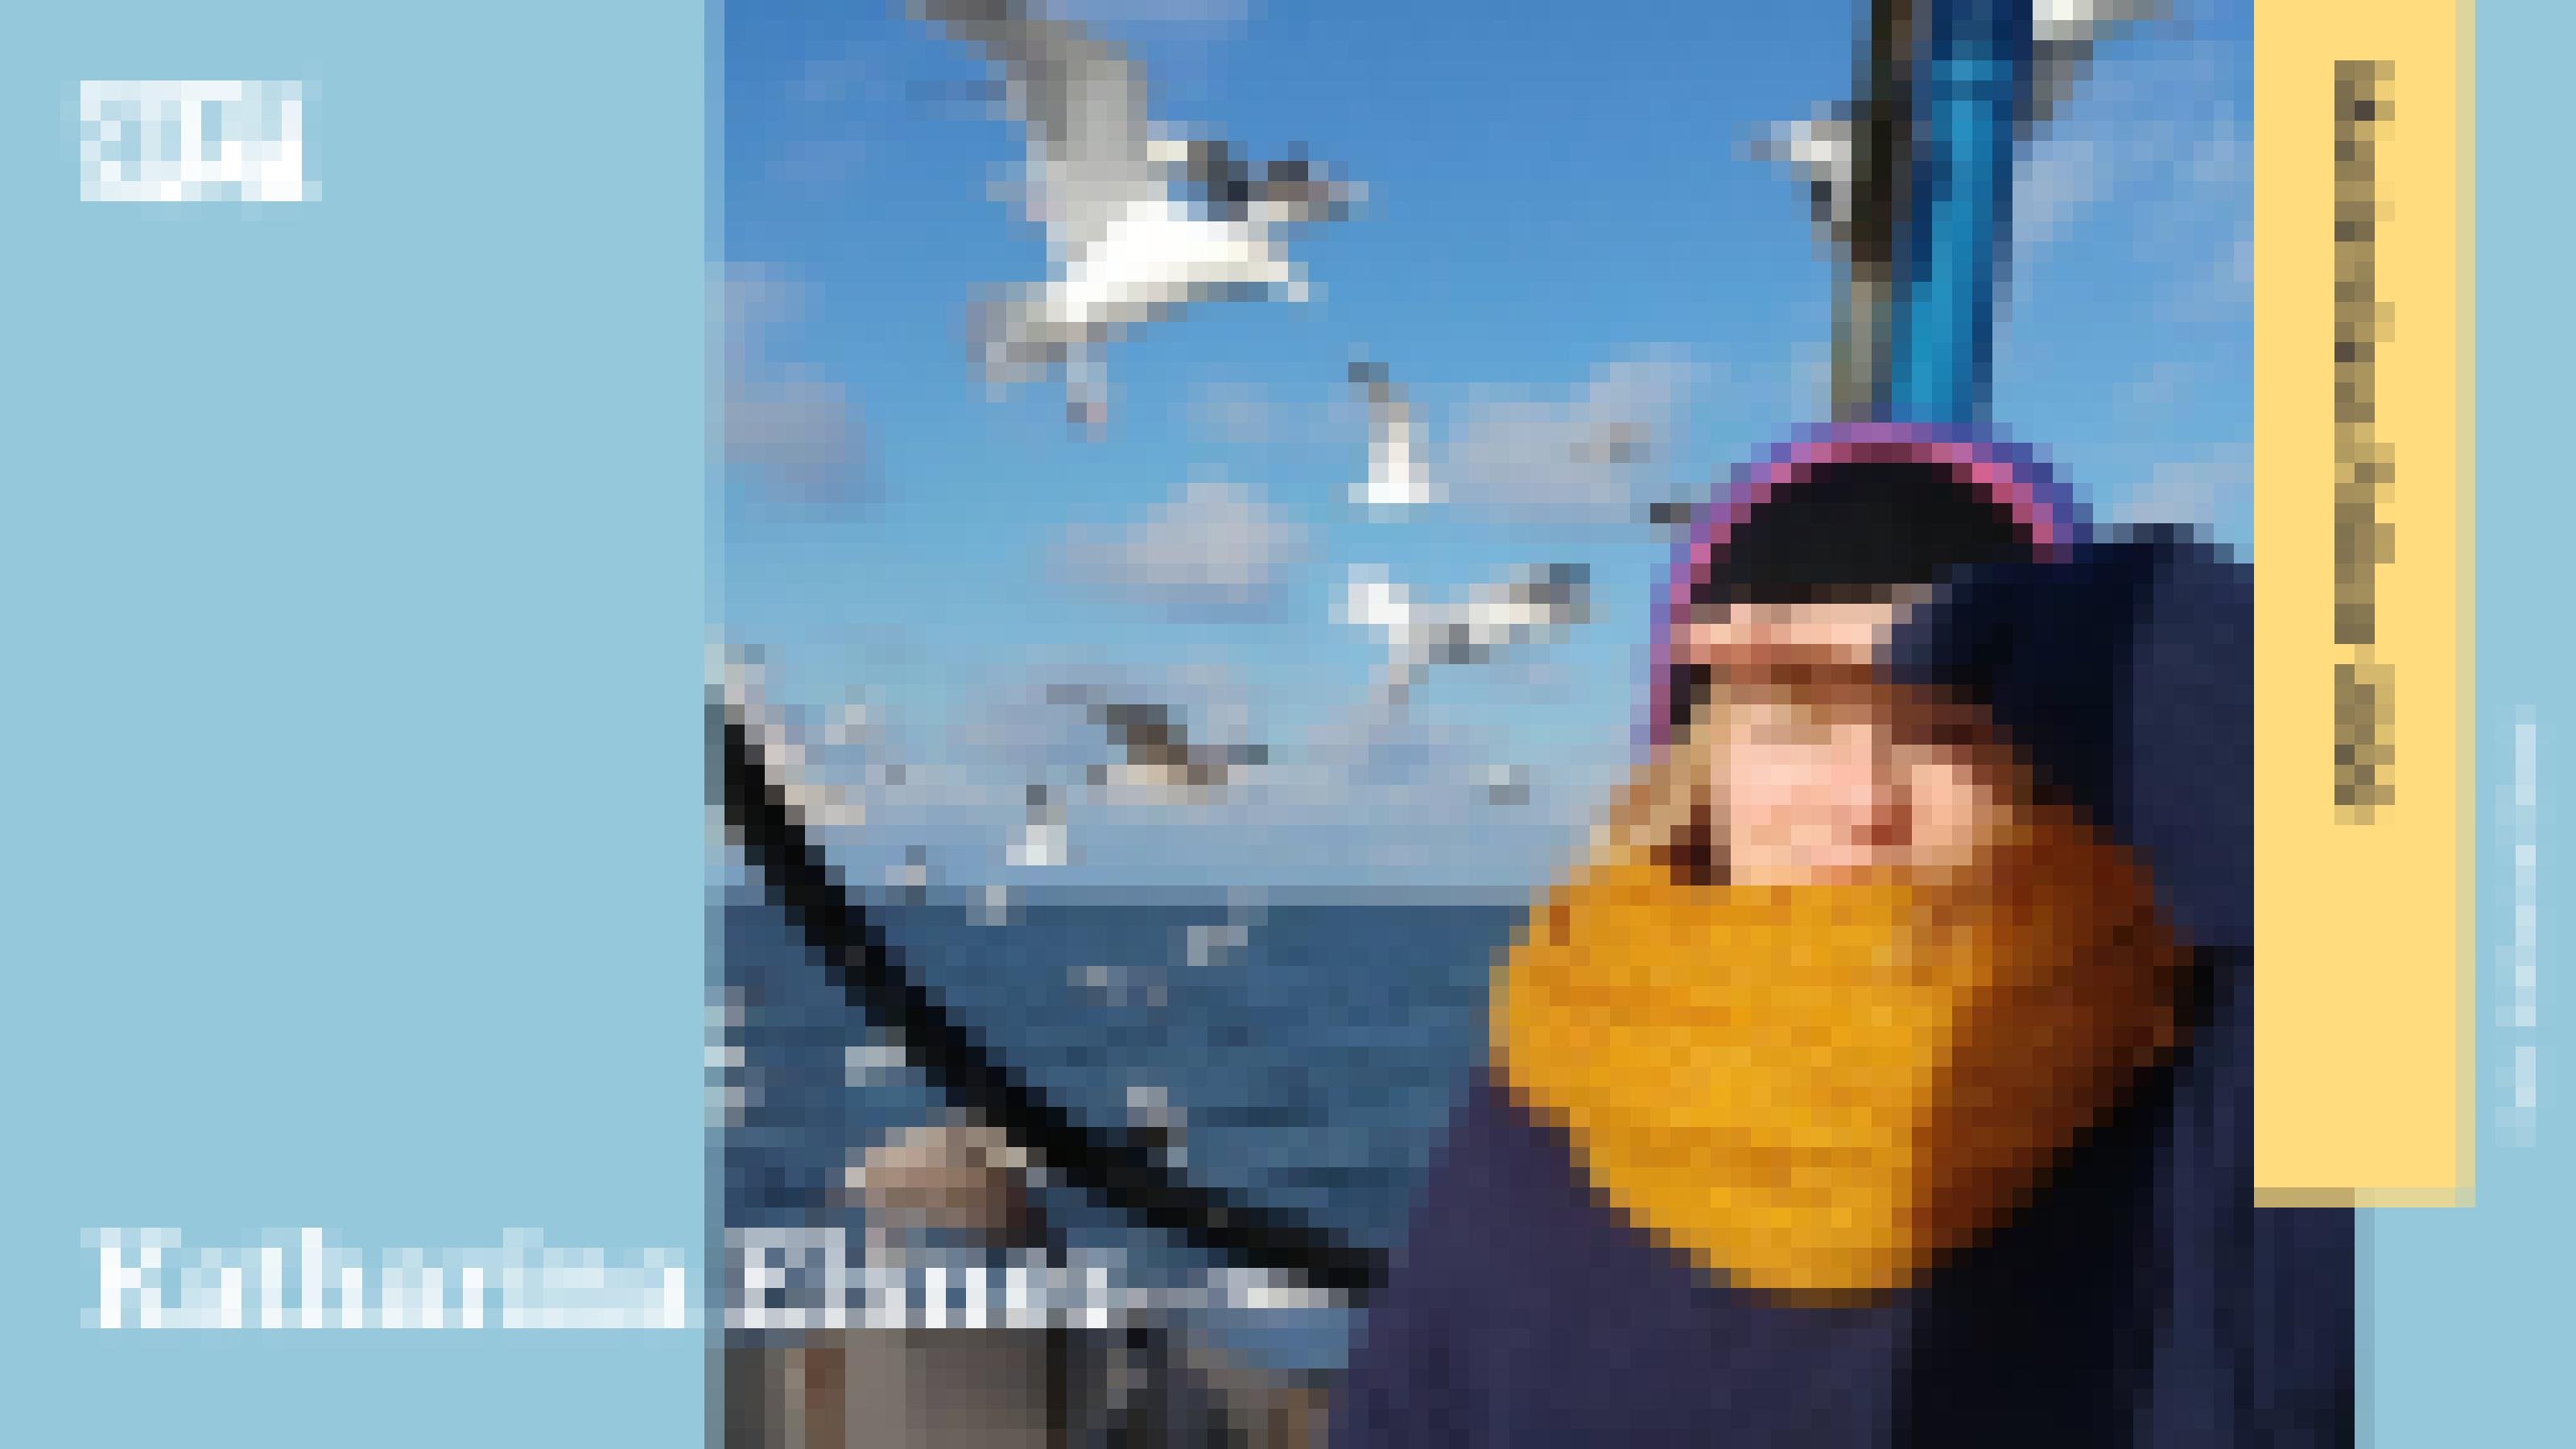 Eine junge Frau mit gelbem Schal und dunkler Mütze hält sich eine Hand über die Augen und schaut direkt in die Kamera. Im Hintergrund sind das Meer, blauer Himmel und viele Möwen zu sehen. Der Name Katharina Elsner ist neben ihr zu sehen. An der rechten Seite befindet sich ein Banner mit der Aufschrift „Masterclass Fellow 2020“.